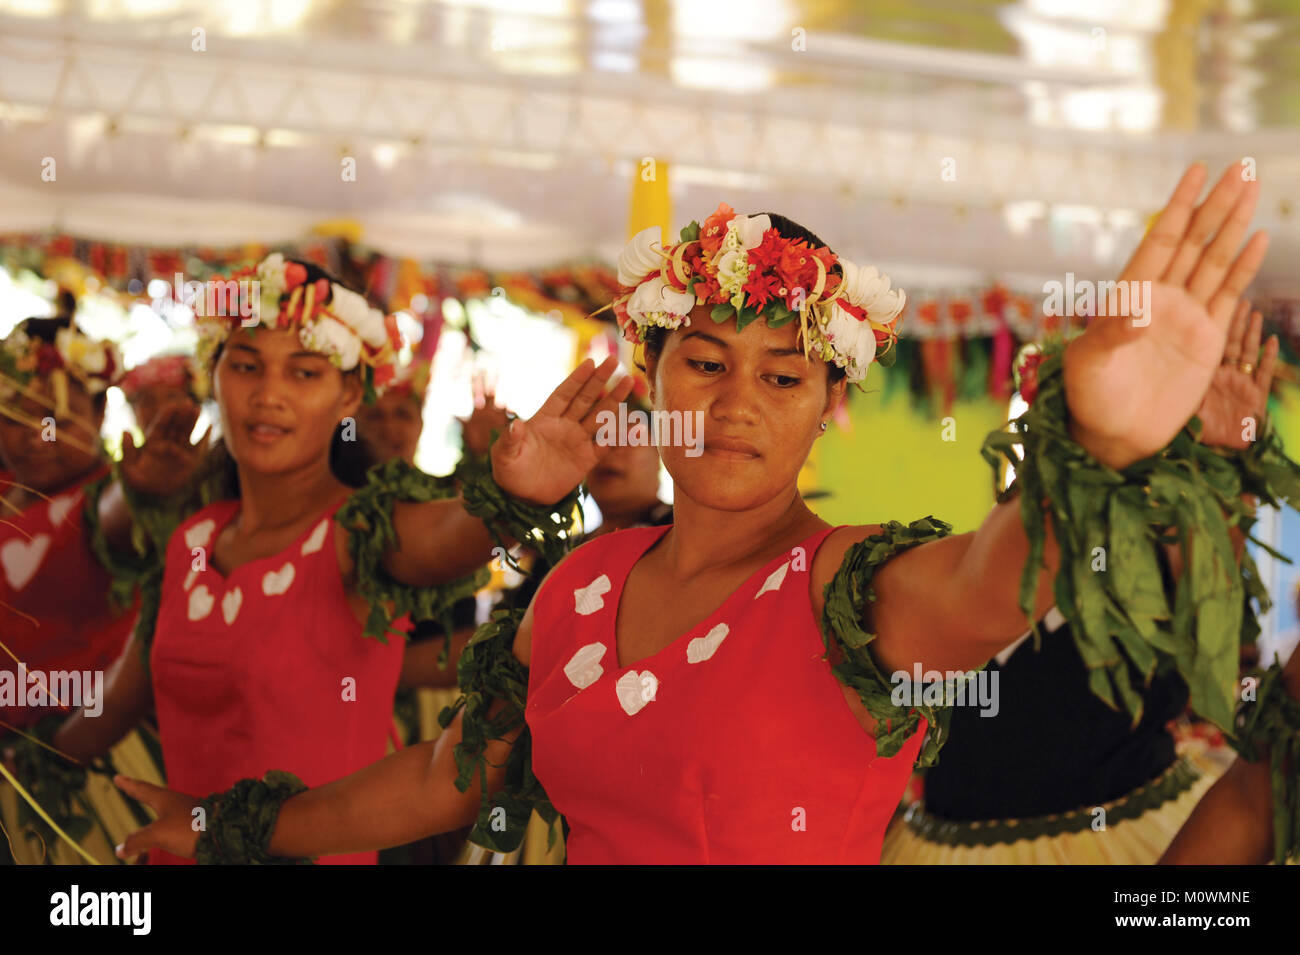 Tuvaluans feiern Ihren Tag der Unabhängigkeit am 1. Oktober 2015 Stockfoto